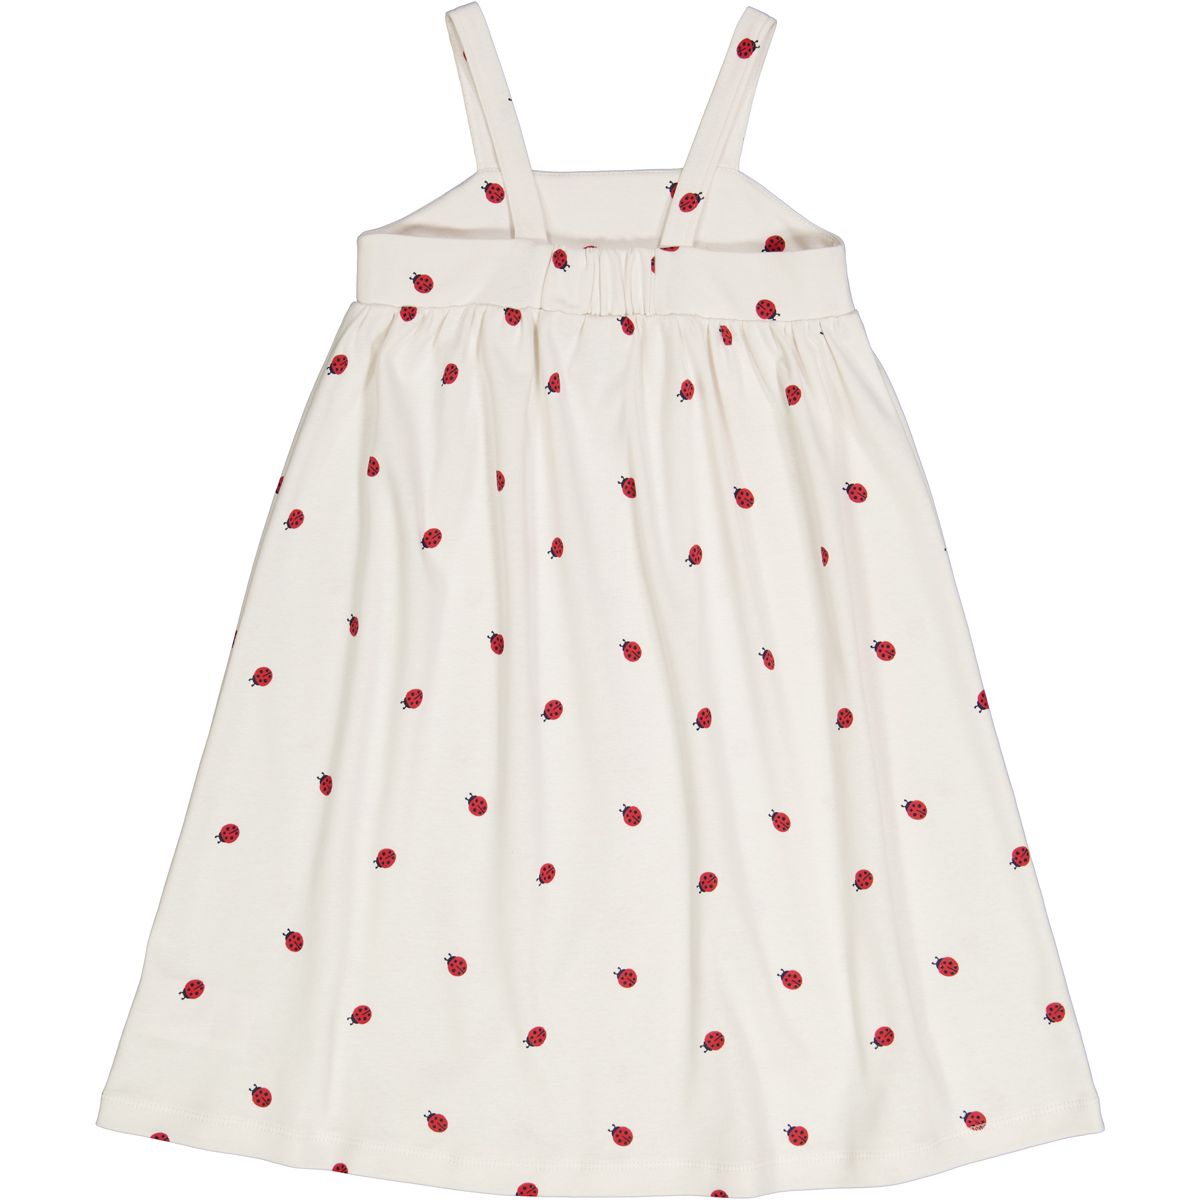 Girls Ladybug Sleeveless Dress